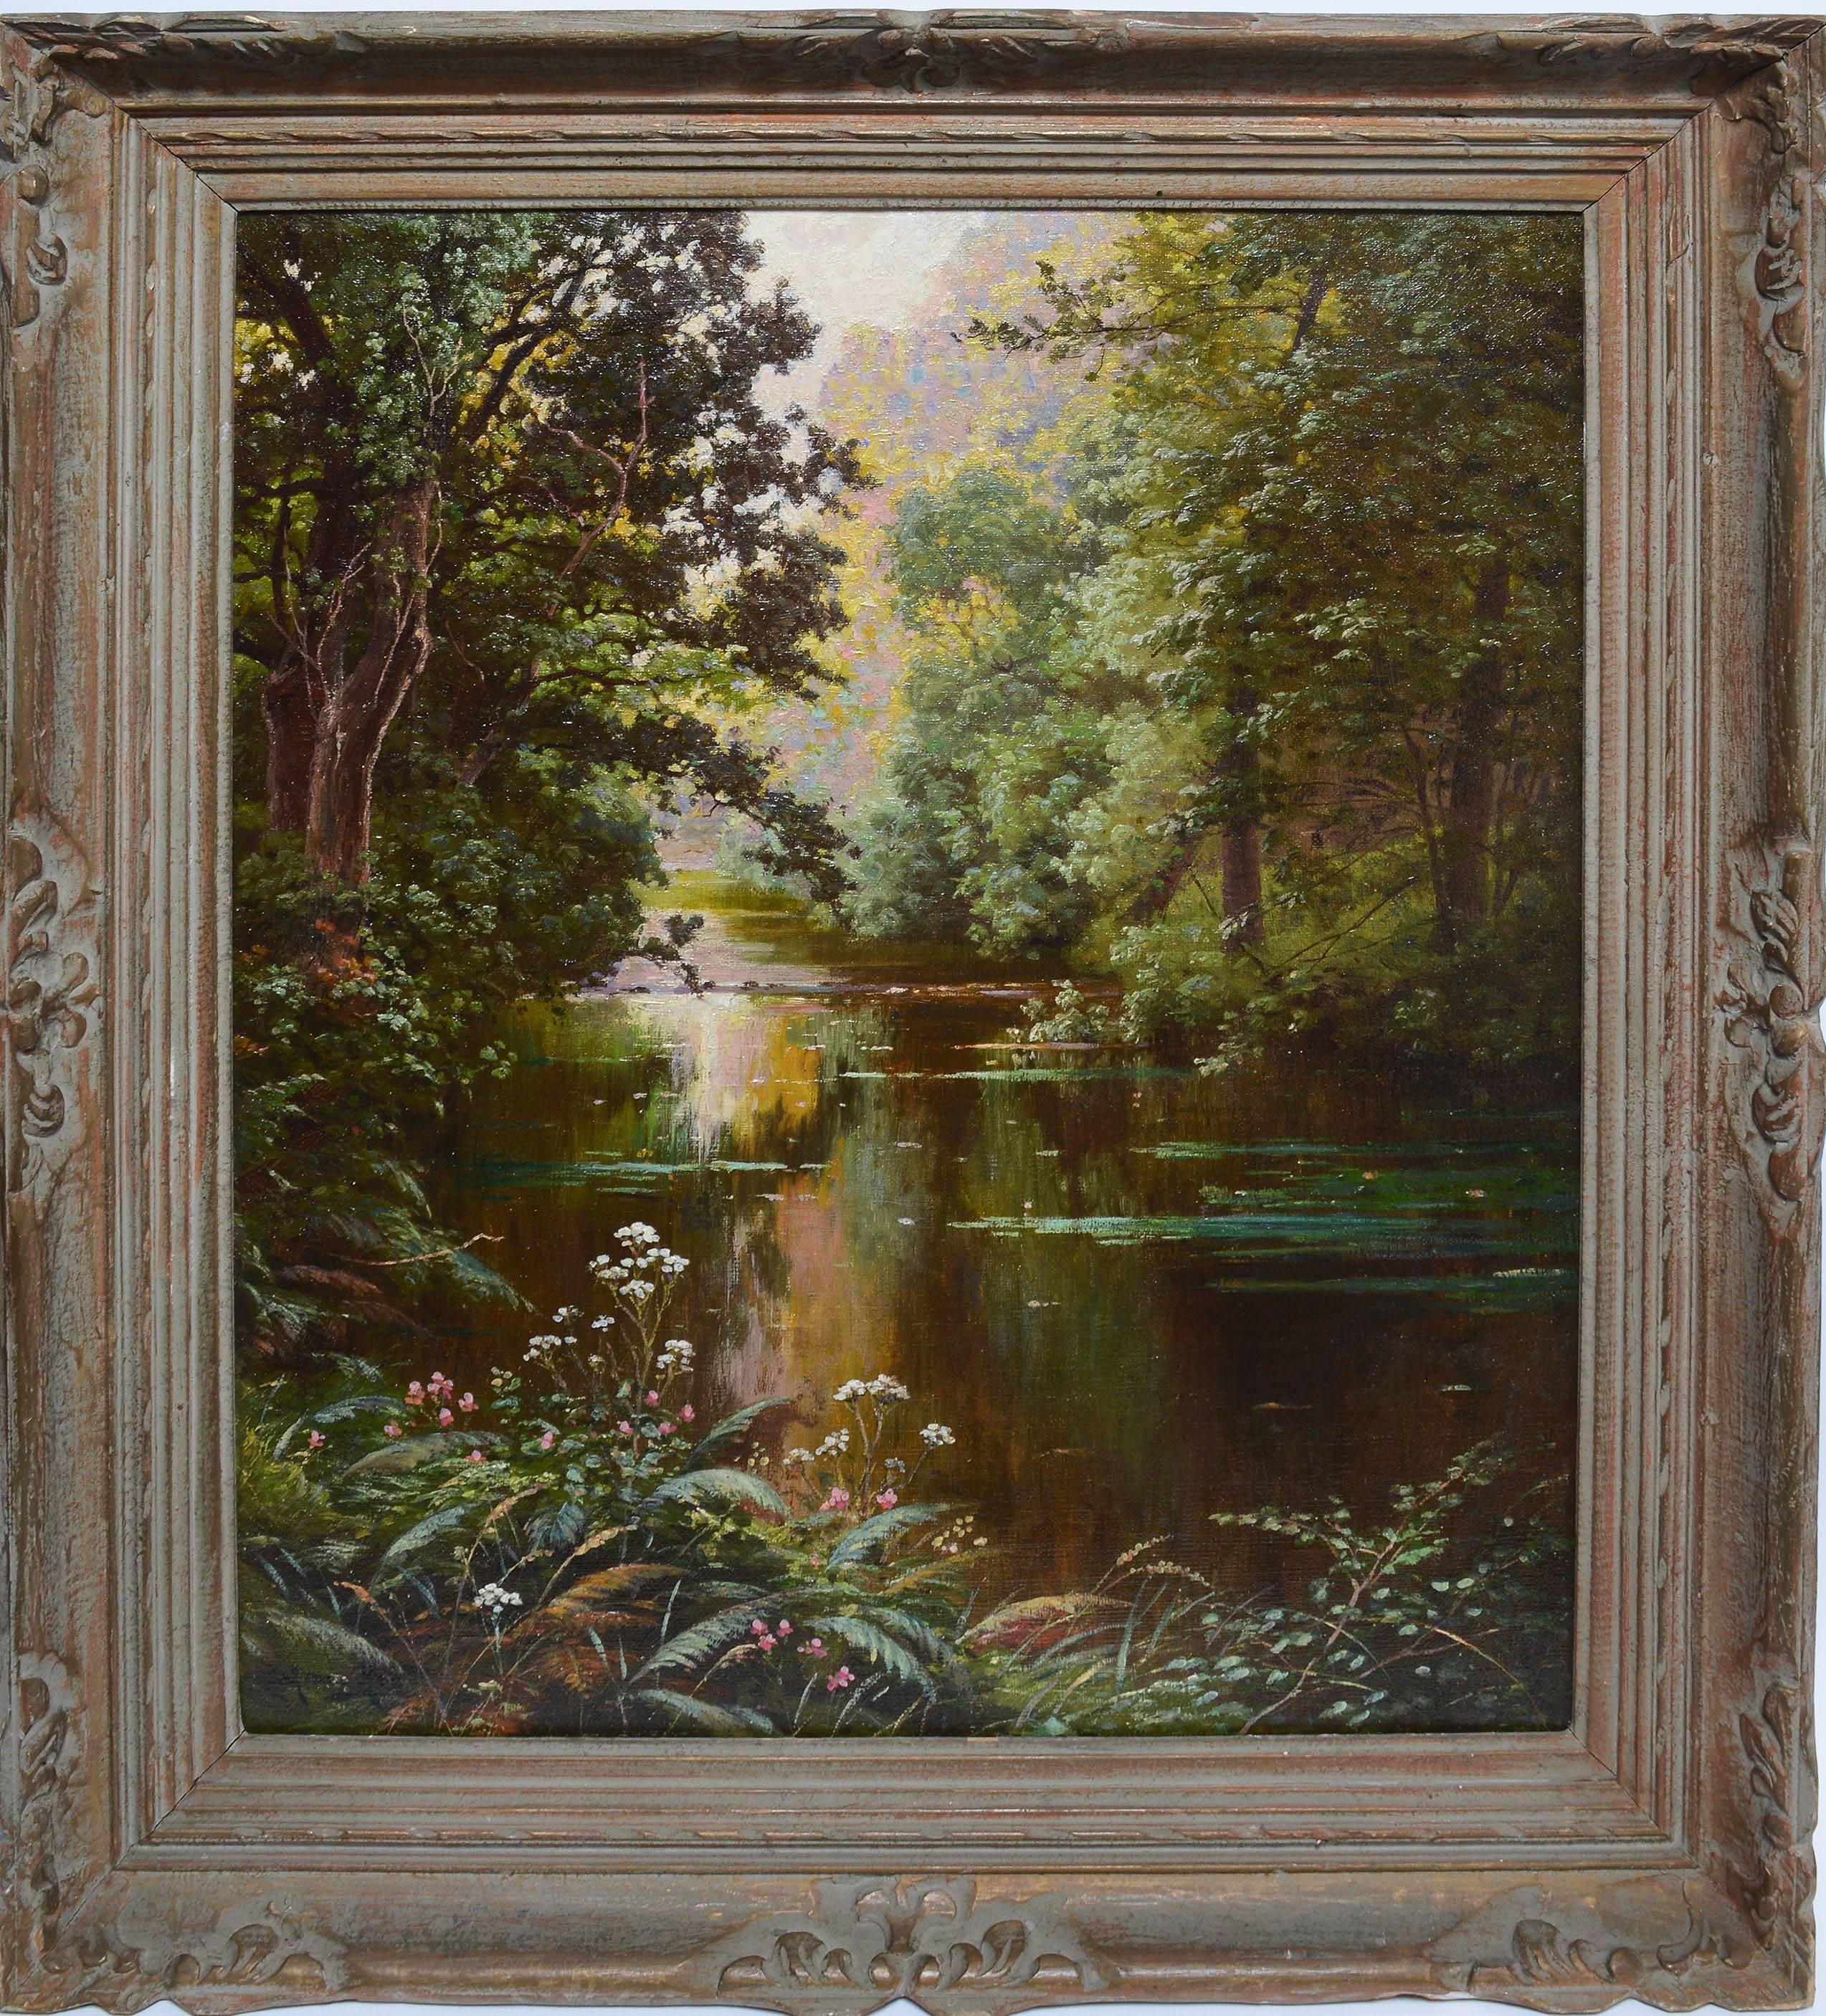 Rene His Landscape Painting - Sunlit River Landscape